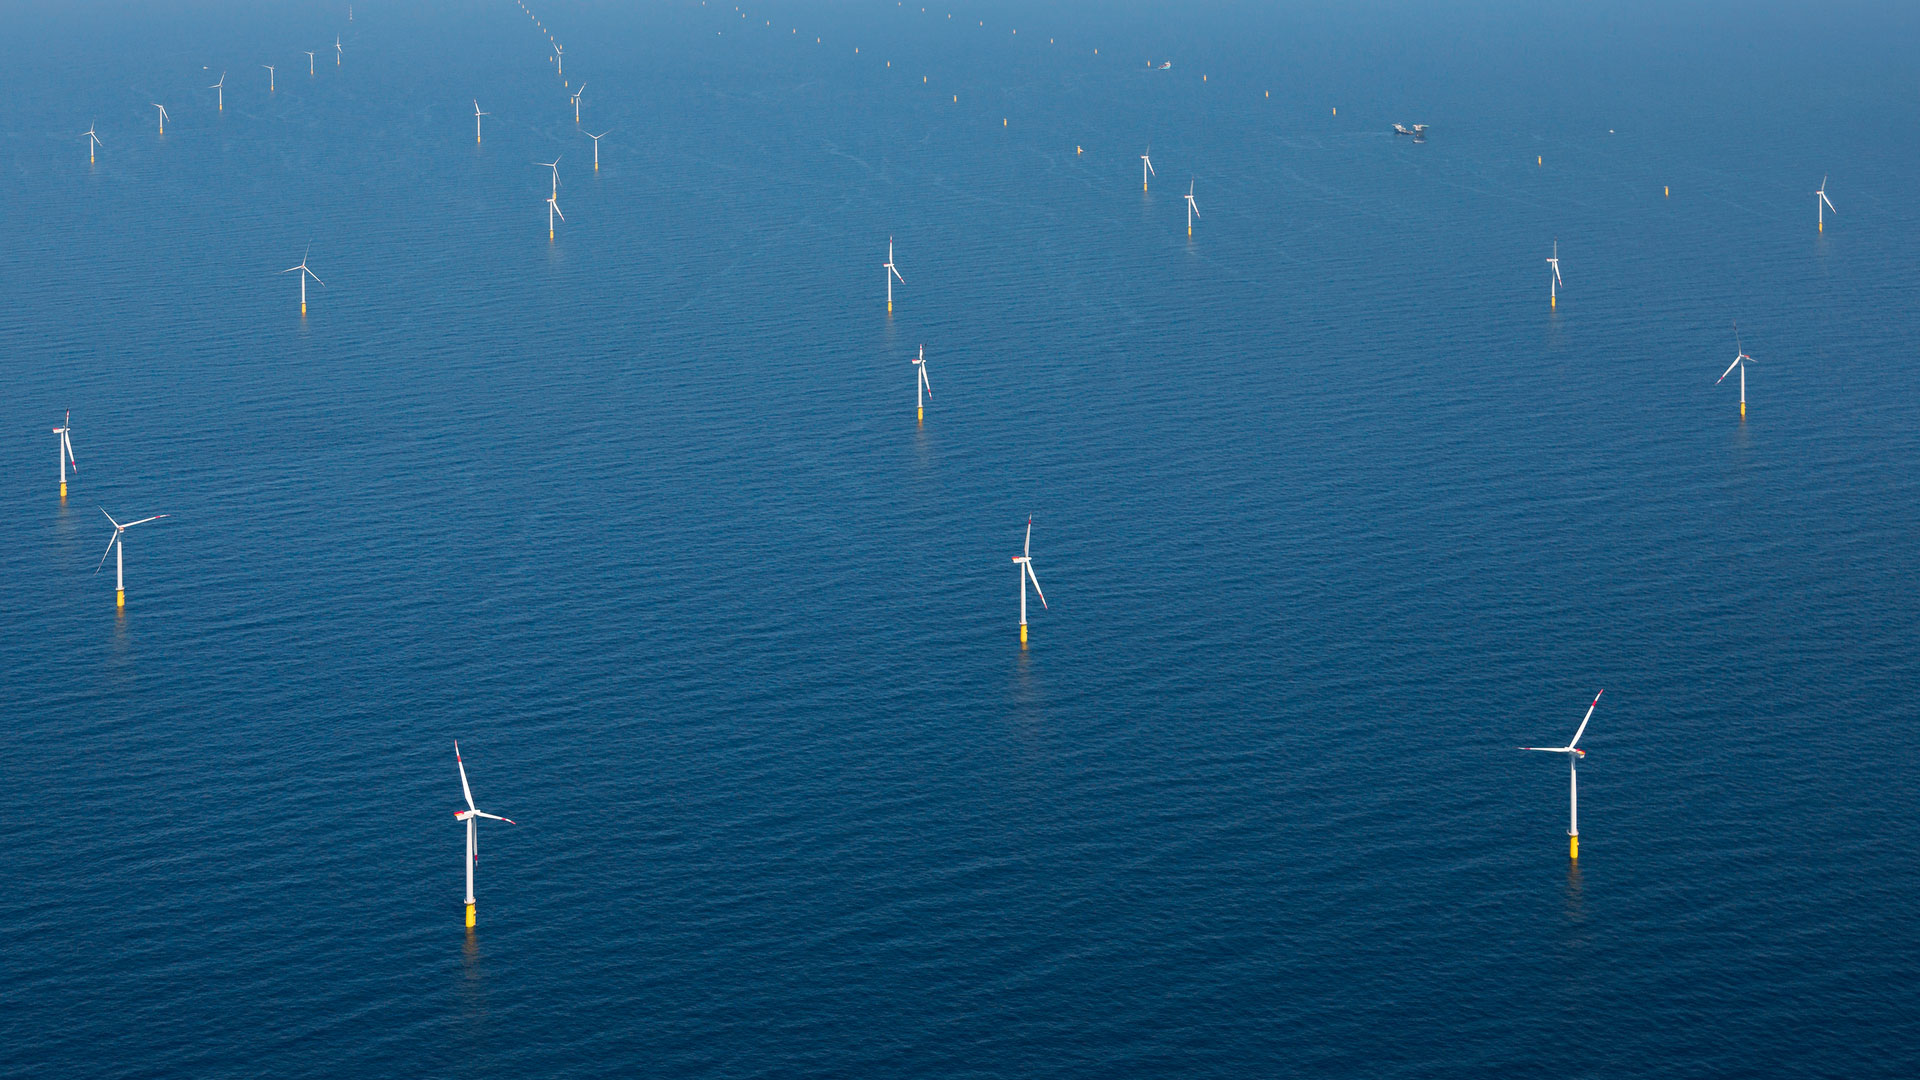 DanTysk offshore wind farm